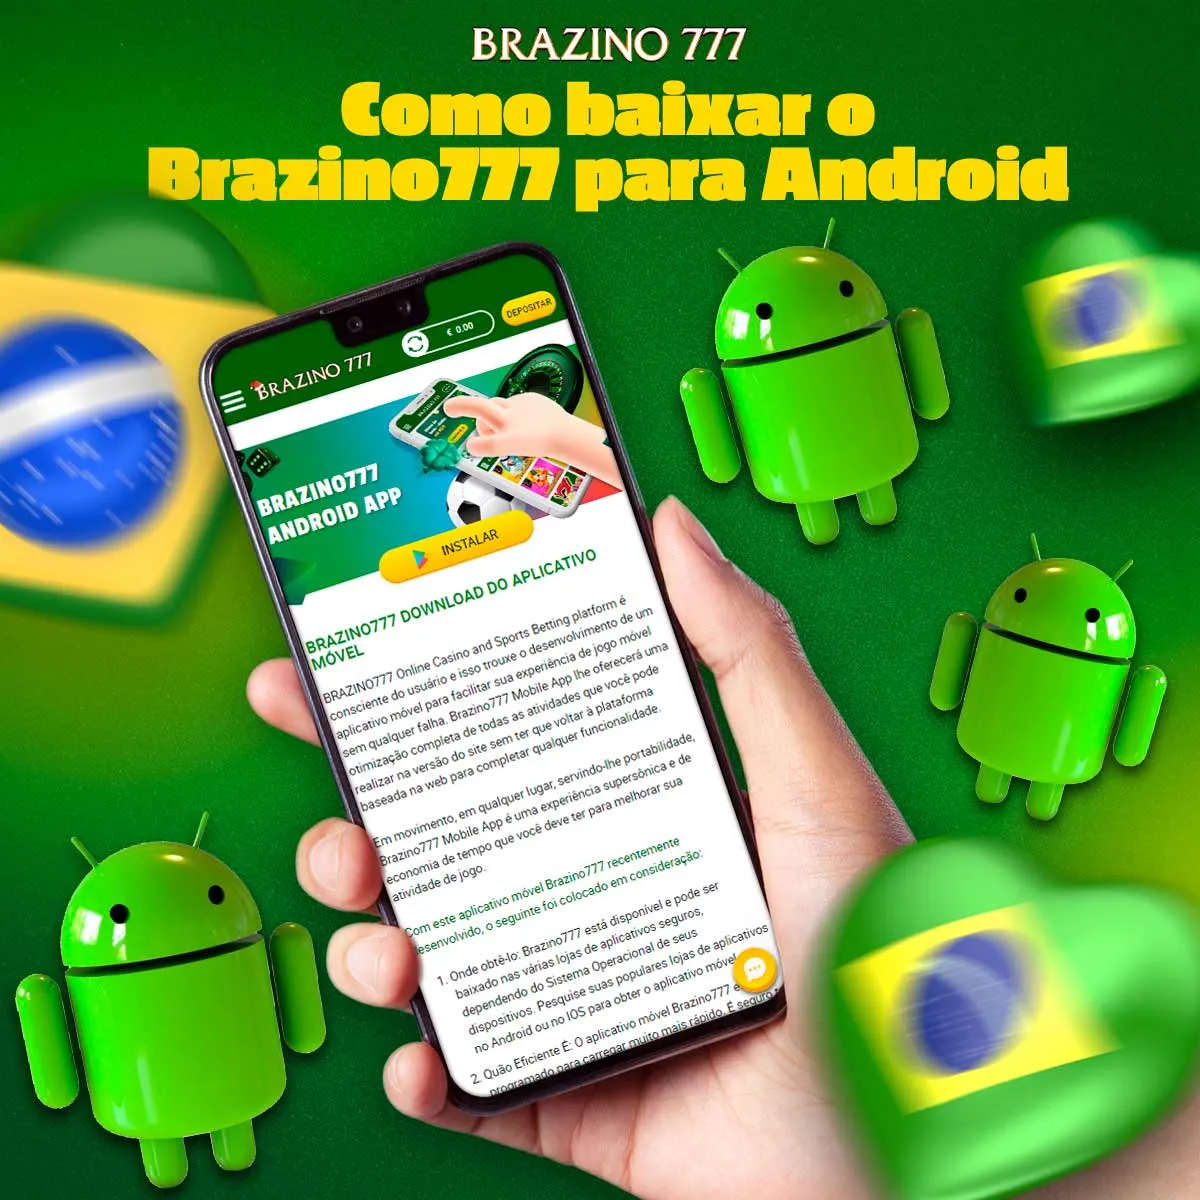 Instalação do aplicativo Brazino777 para Android